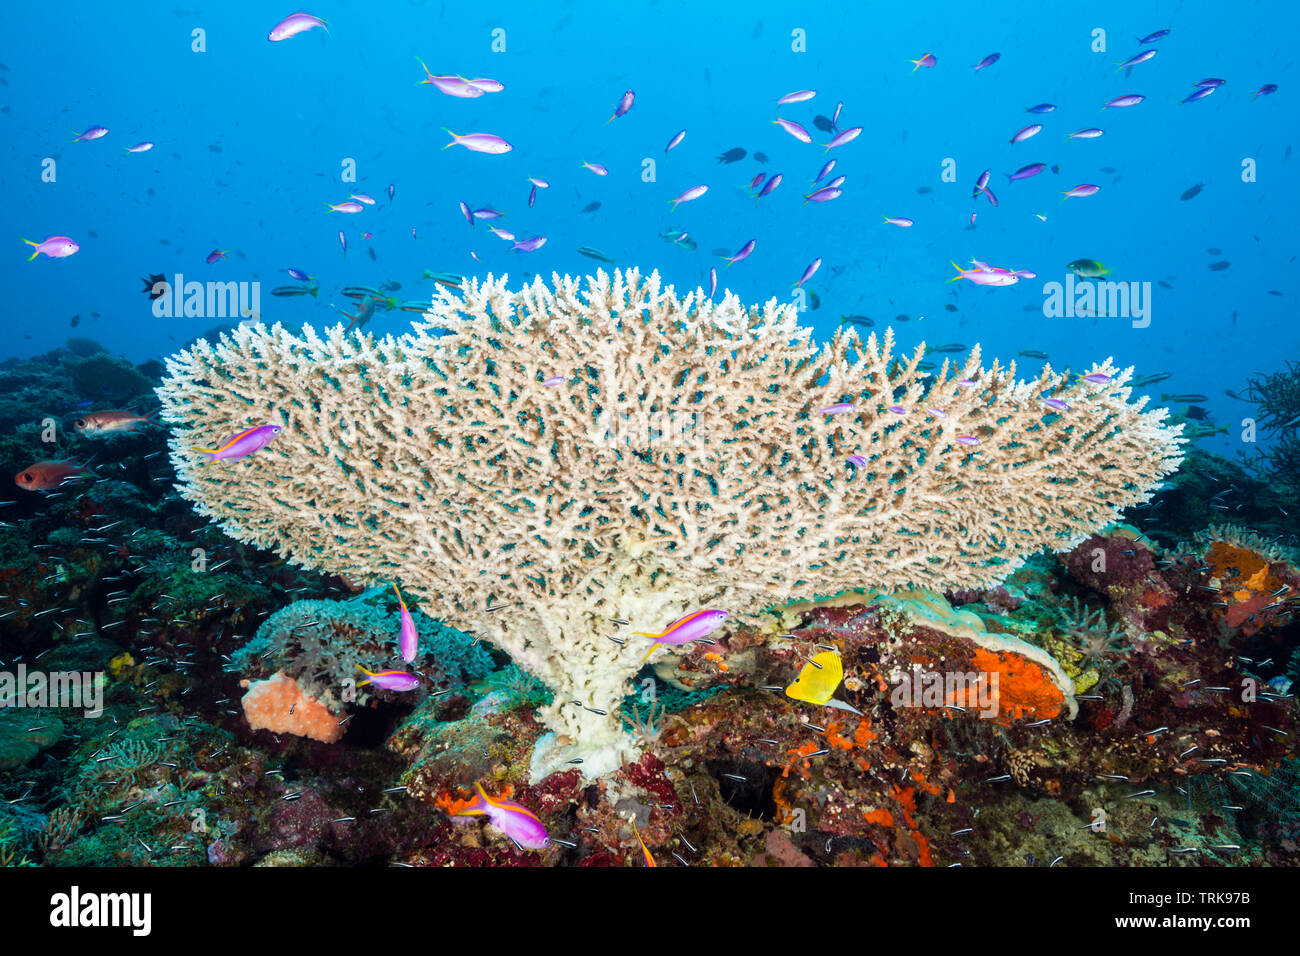 Tableau des coraux dans les récifs coralliens, Acropora, Lissenung, New Ireland, Papouasie Nouvelle Guinée Banque D'Images